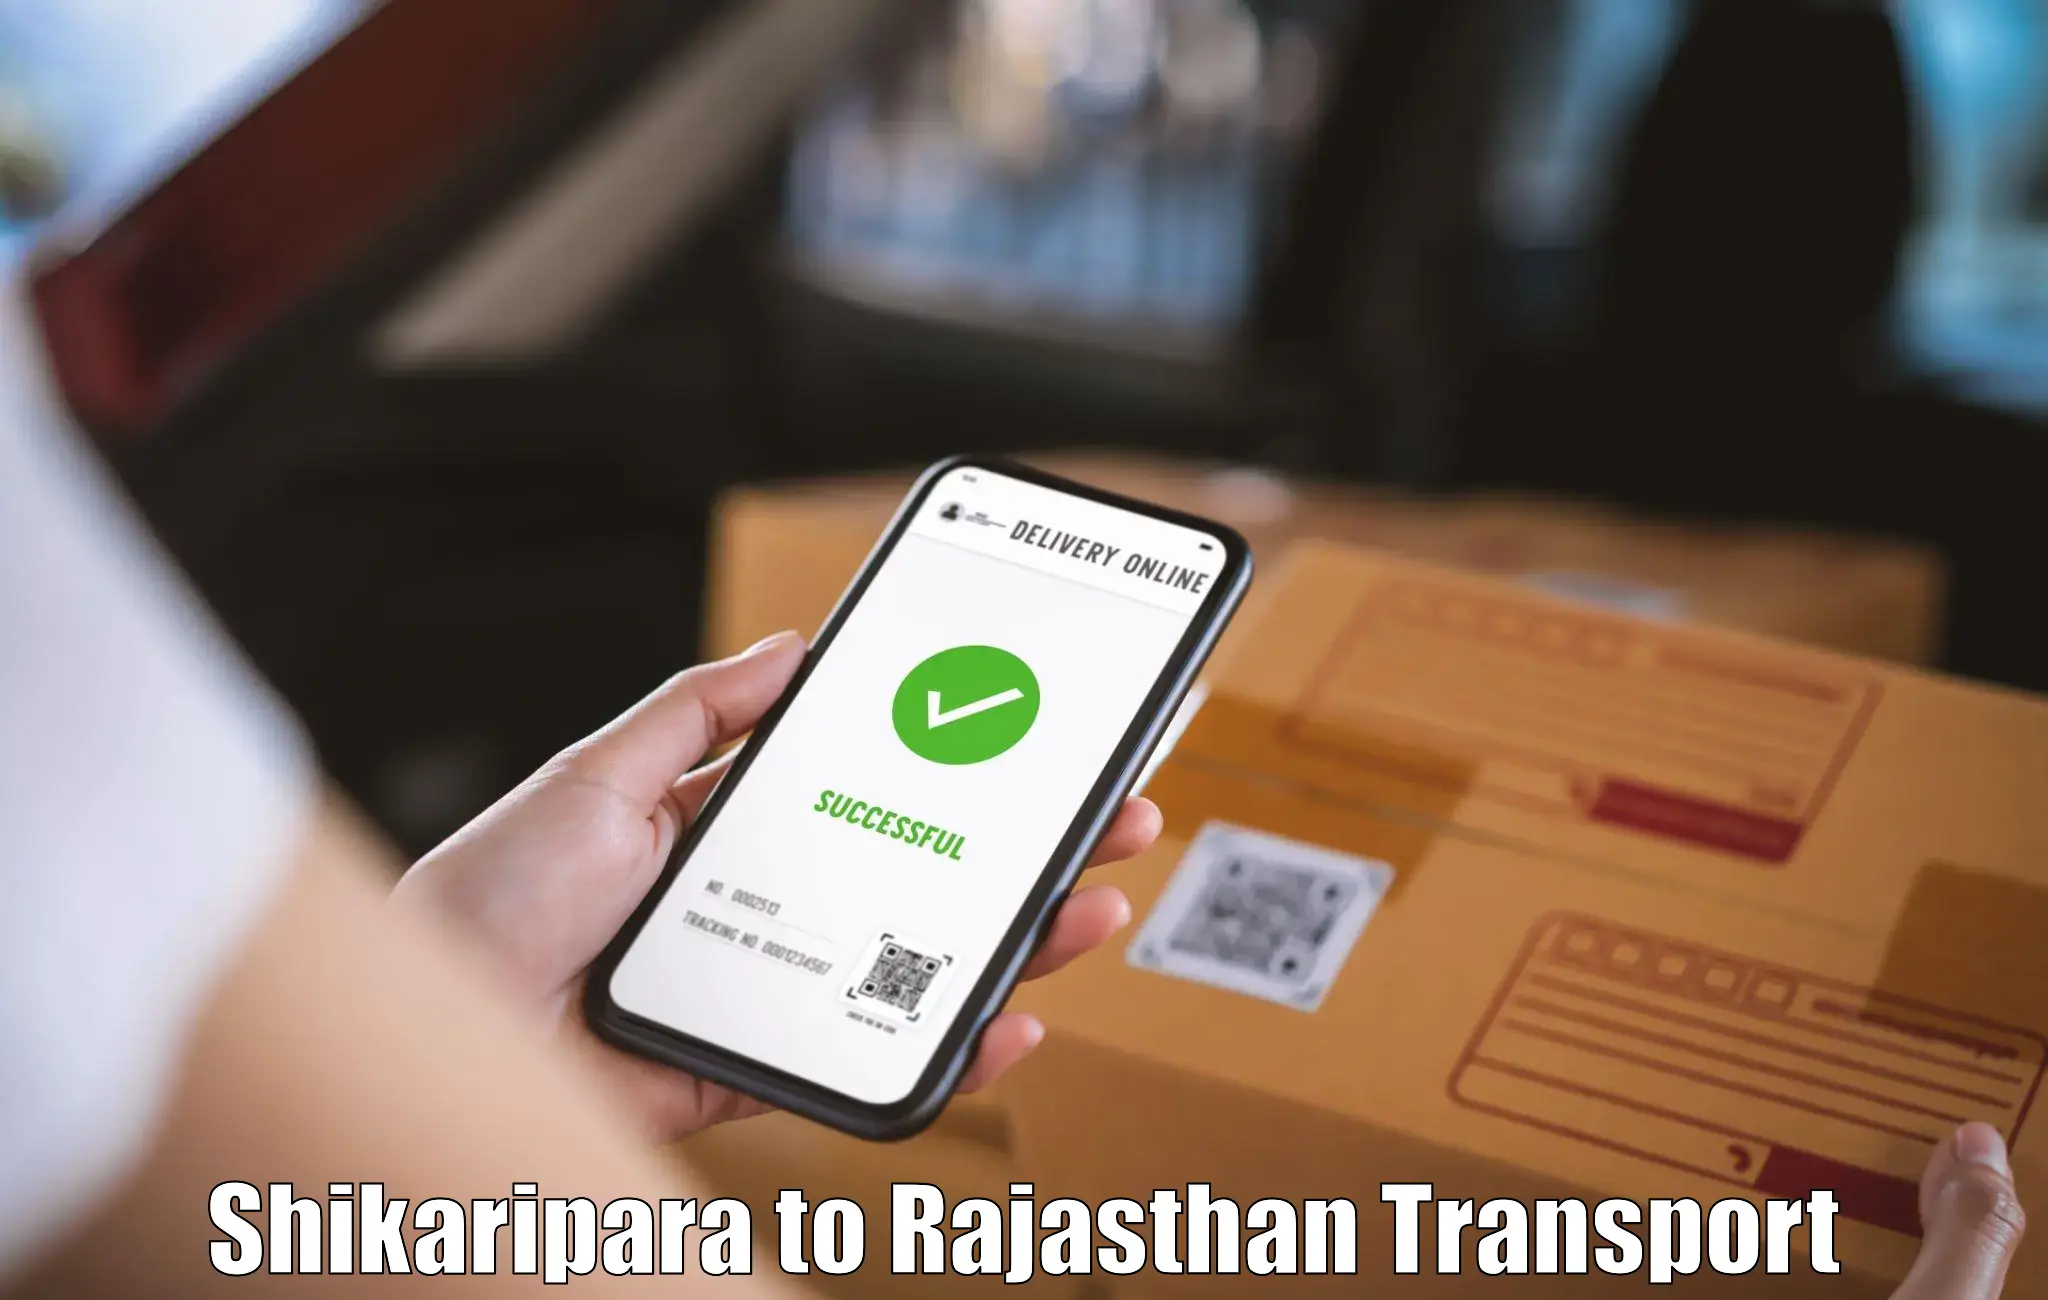 Online transport service Shikaripara to Kherwara